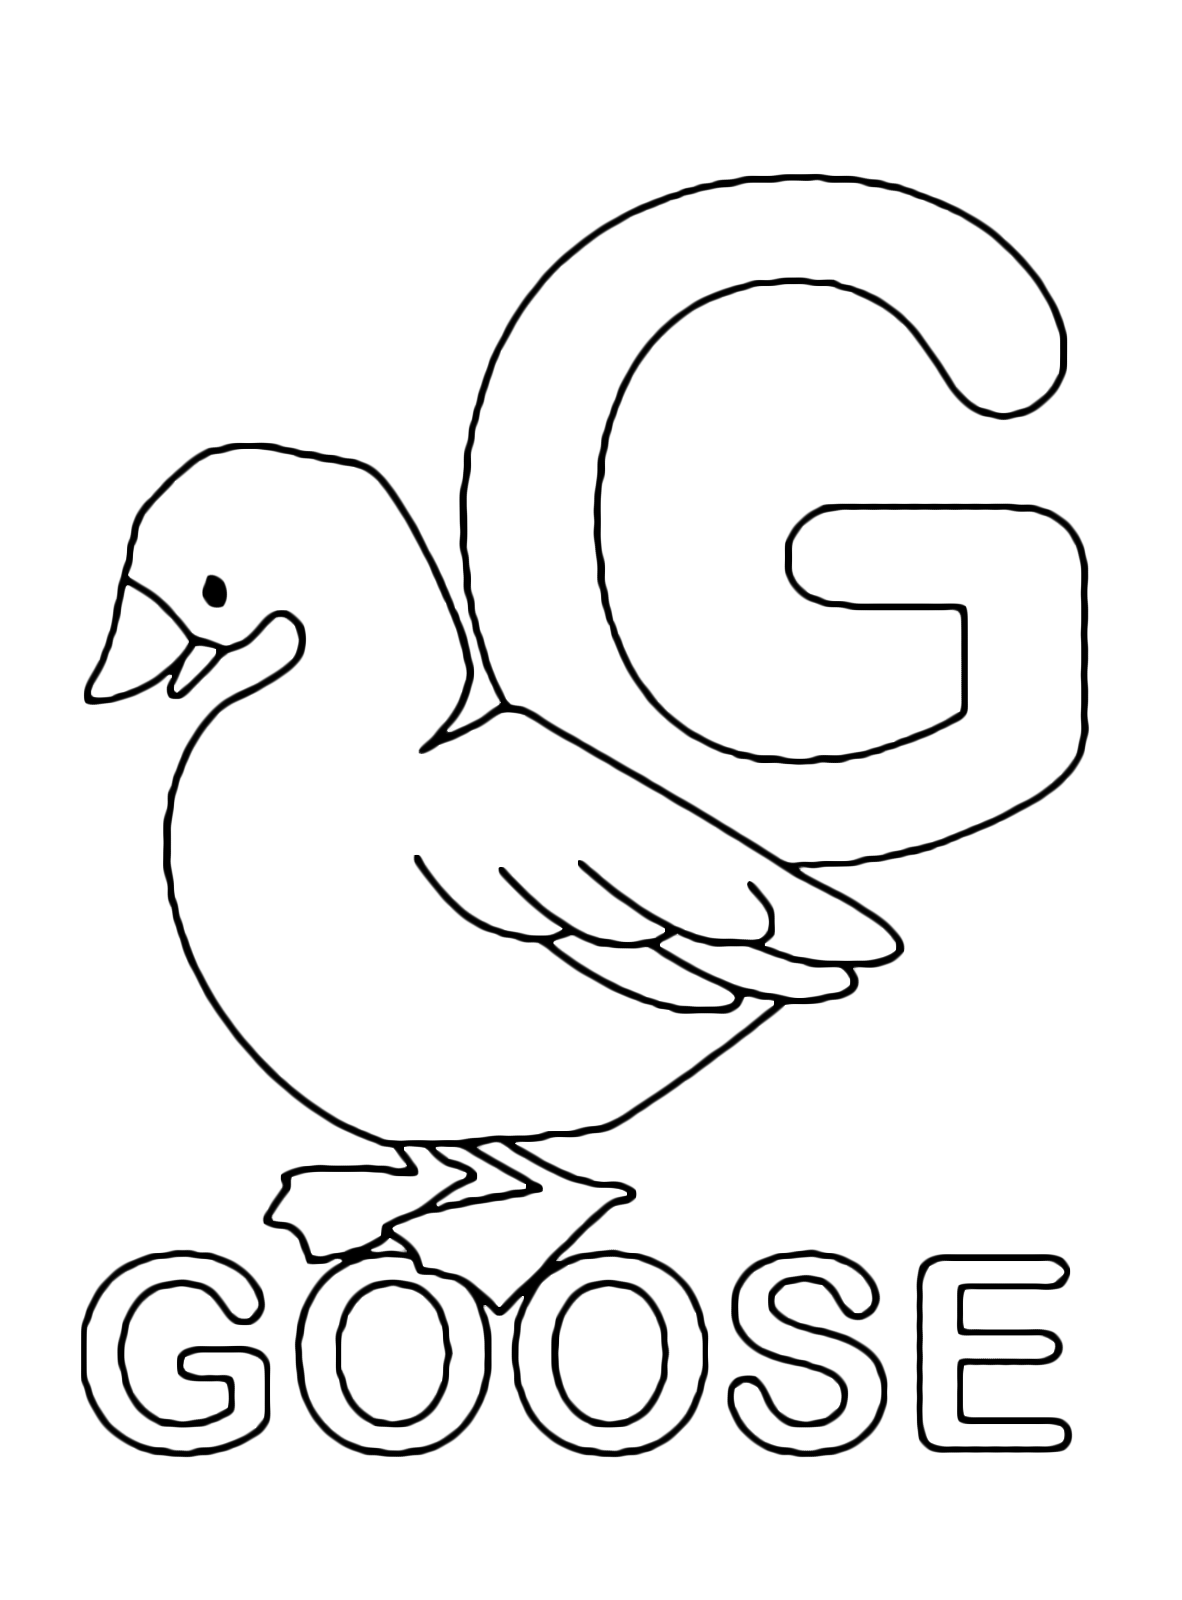 Lettere e numeri - Lettera G in stampatello di goose (oca) in Inglese